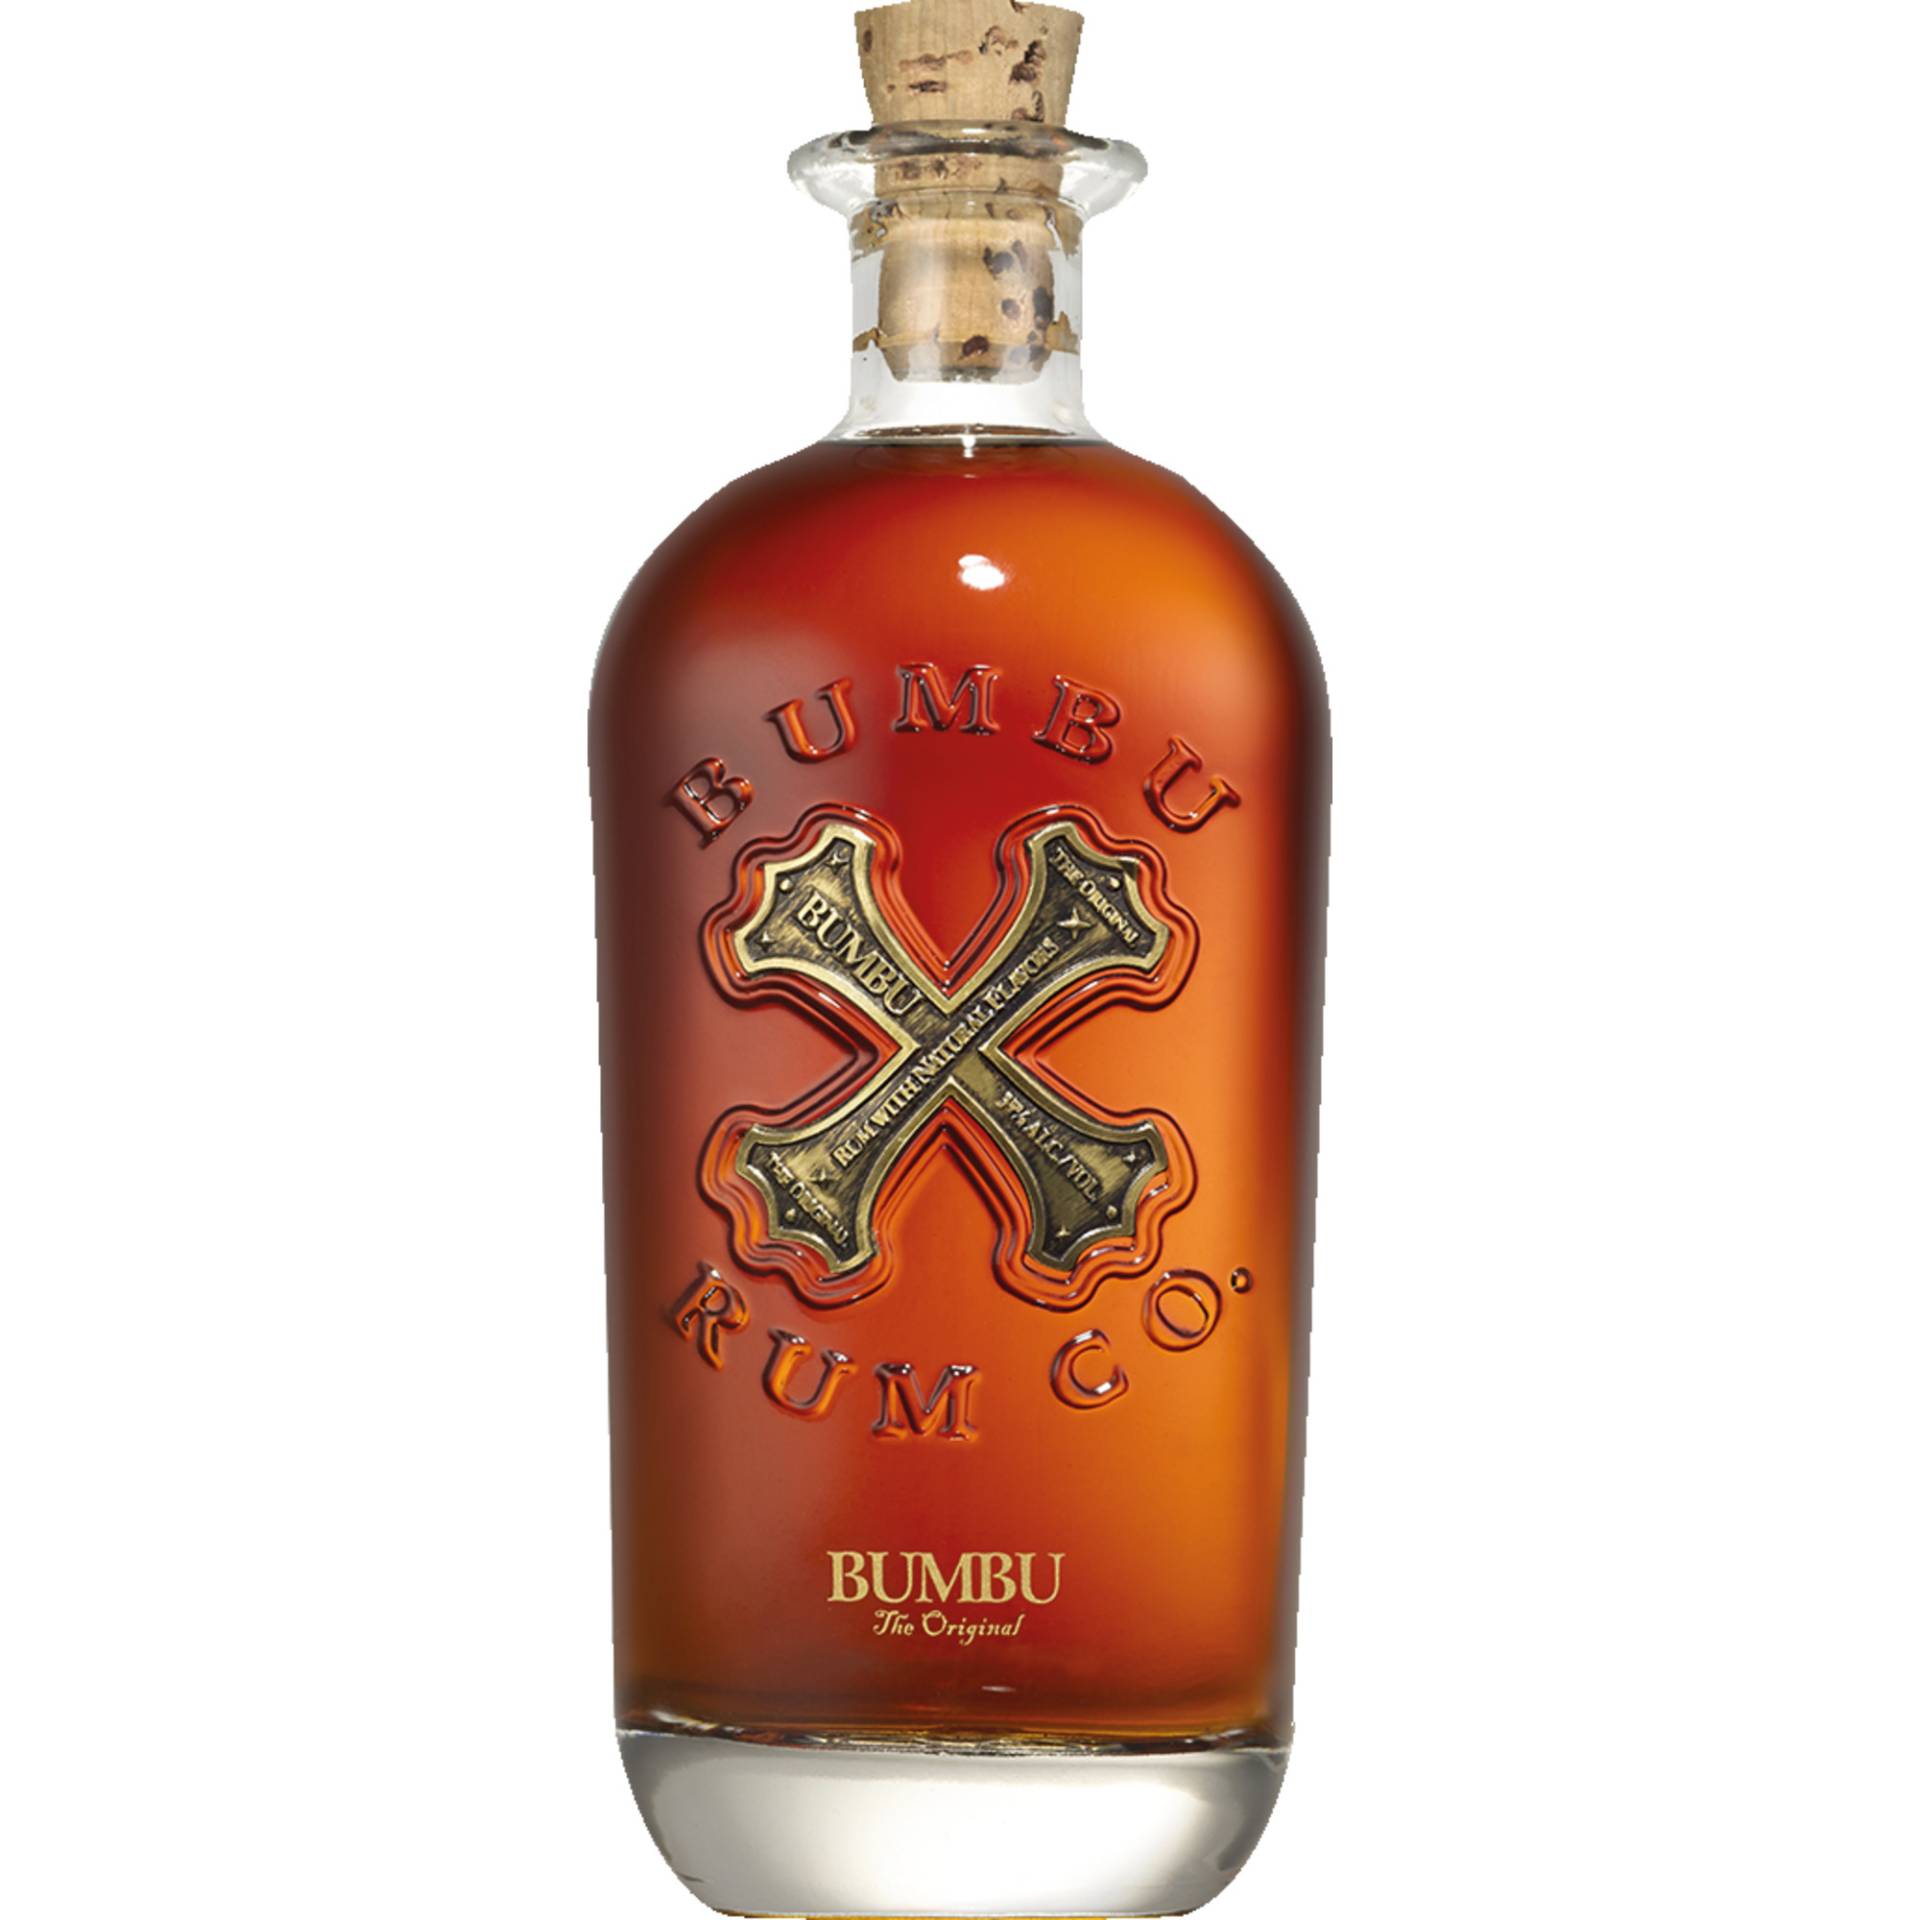 Bumbu Orignal Rum, Barbados, 0,7 L, 40% Vol., Spirituosen von Pernod Ricard Deutschland GmbH, Habsburgerring 2, 50674 Köln, Deutschland